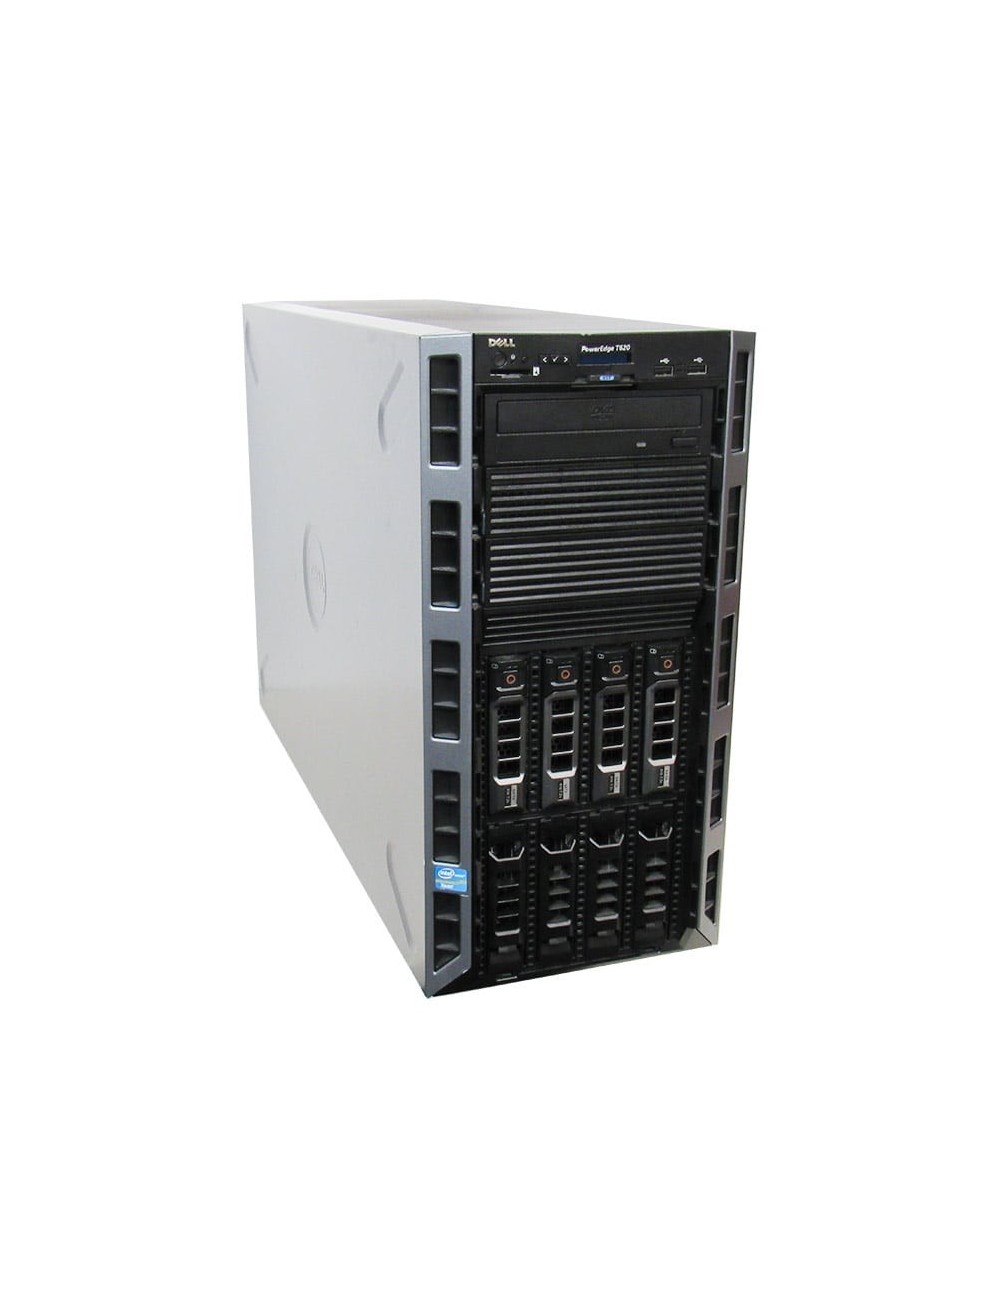 Dell PowerEdge T620 8x LFF, 2x E5-2640 v2 8C, 64GB RAM, PERC H710p 1GB, 3x 8TB 3,5" 7,2k SAS HDD, 2x 750 W PSU